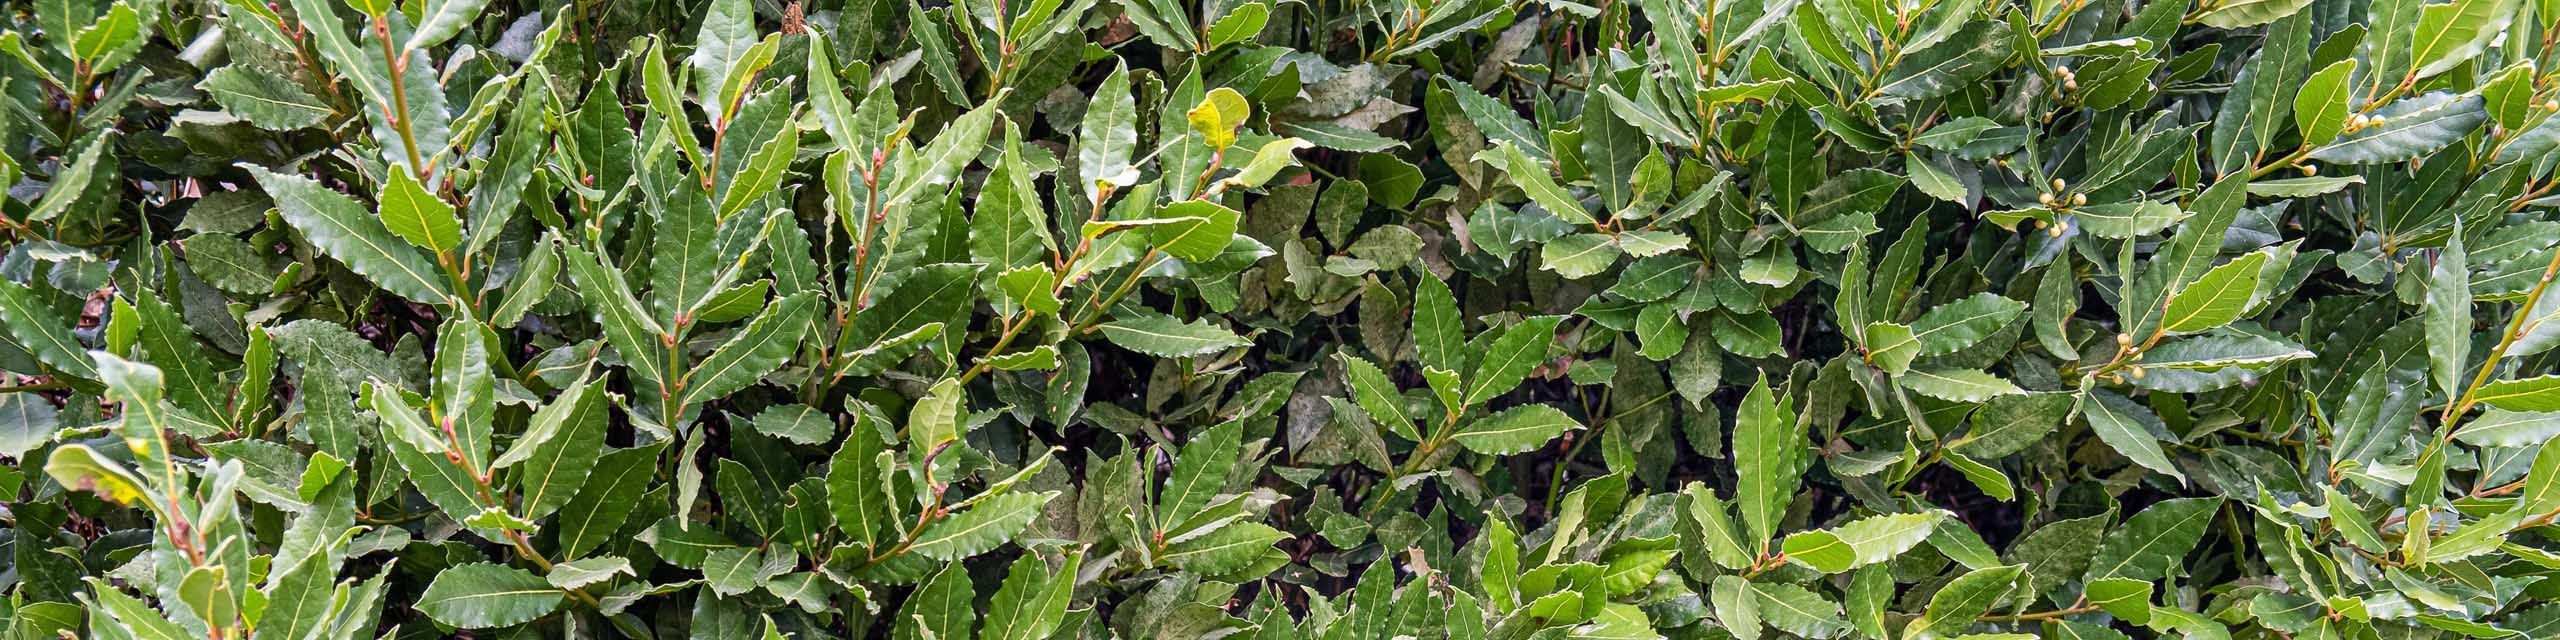 Green leaves of bay laurel grown as a hedge.